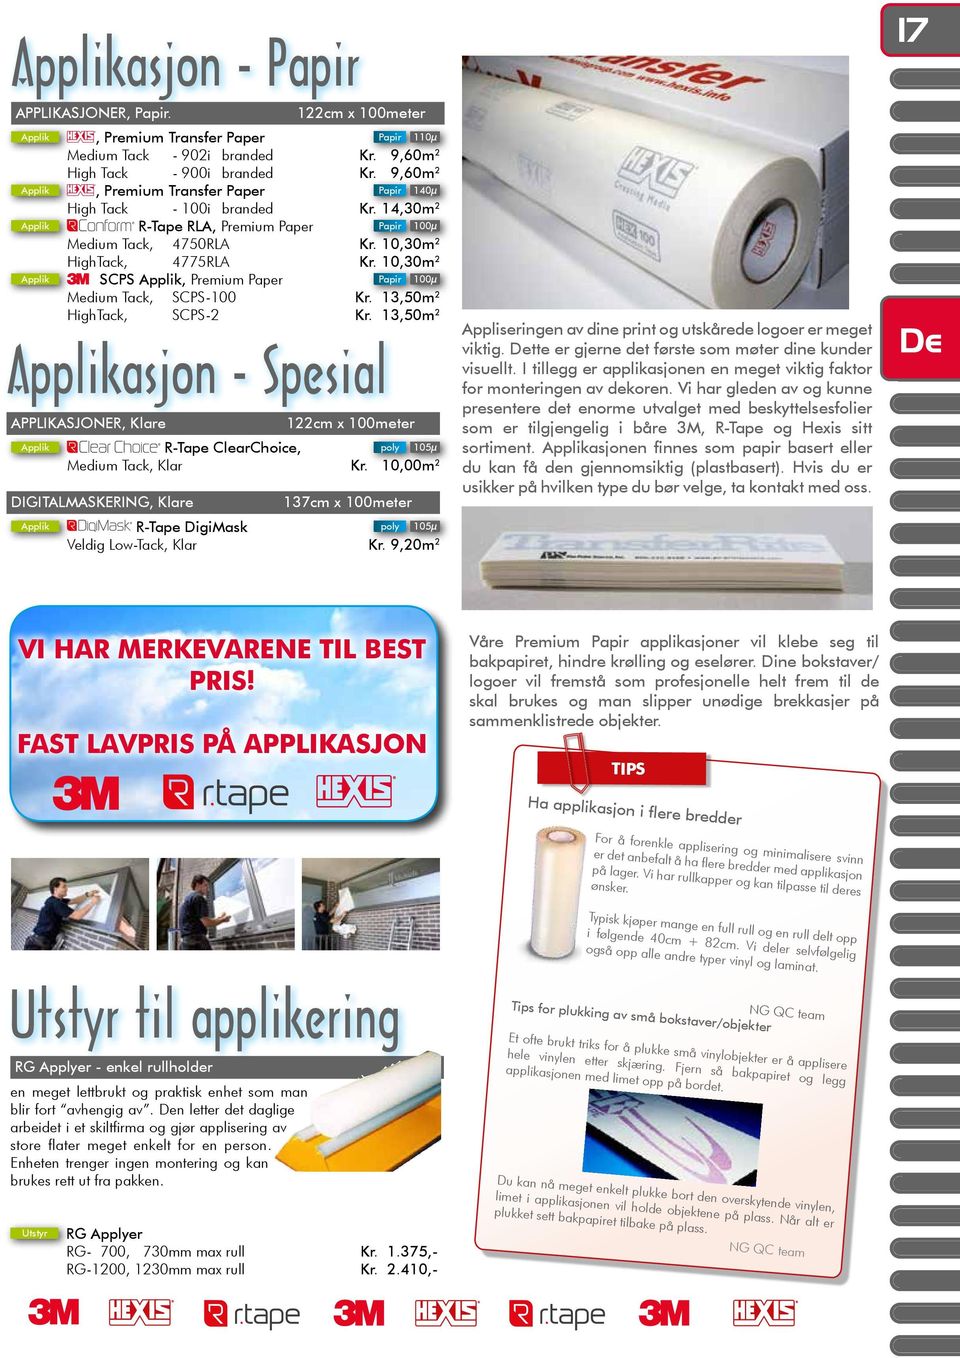 10,30m 2 Applik SCPS Applik, Premium Paper Papir 100µ Medium Tack, SCPS-100 Kr. 13,50m 2 HighTack, SCPS-2 Kr.